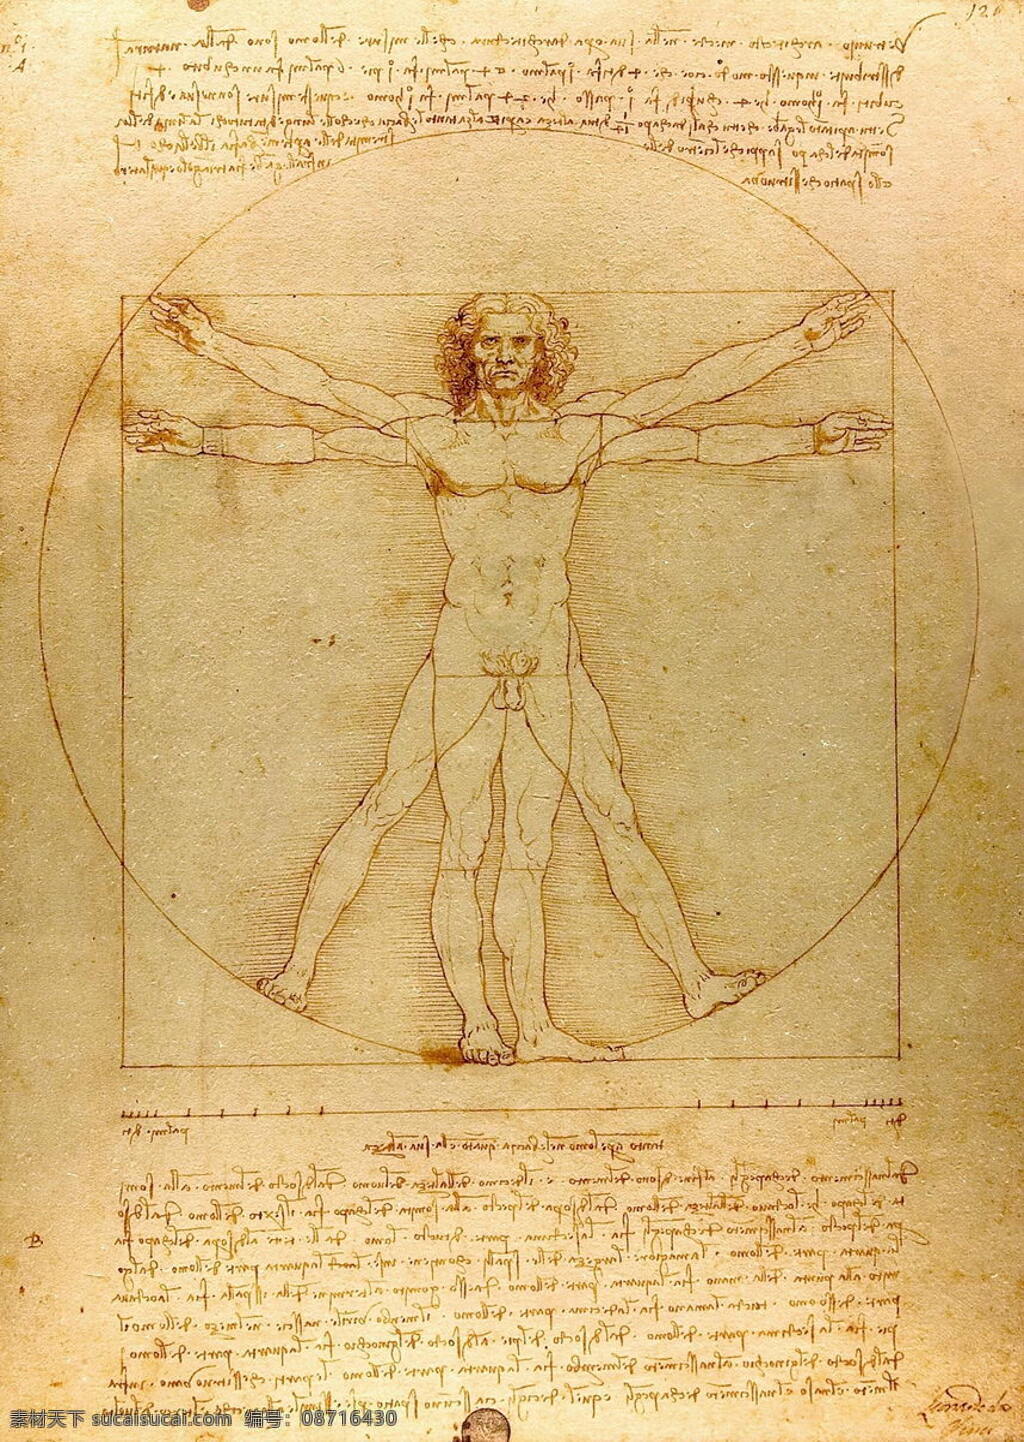 达芬奇作品 达芬奇 人体 达芬奇密码 神秘 解剖 比例 绘画艺术 文化艺术 绘画书法